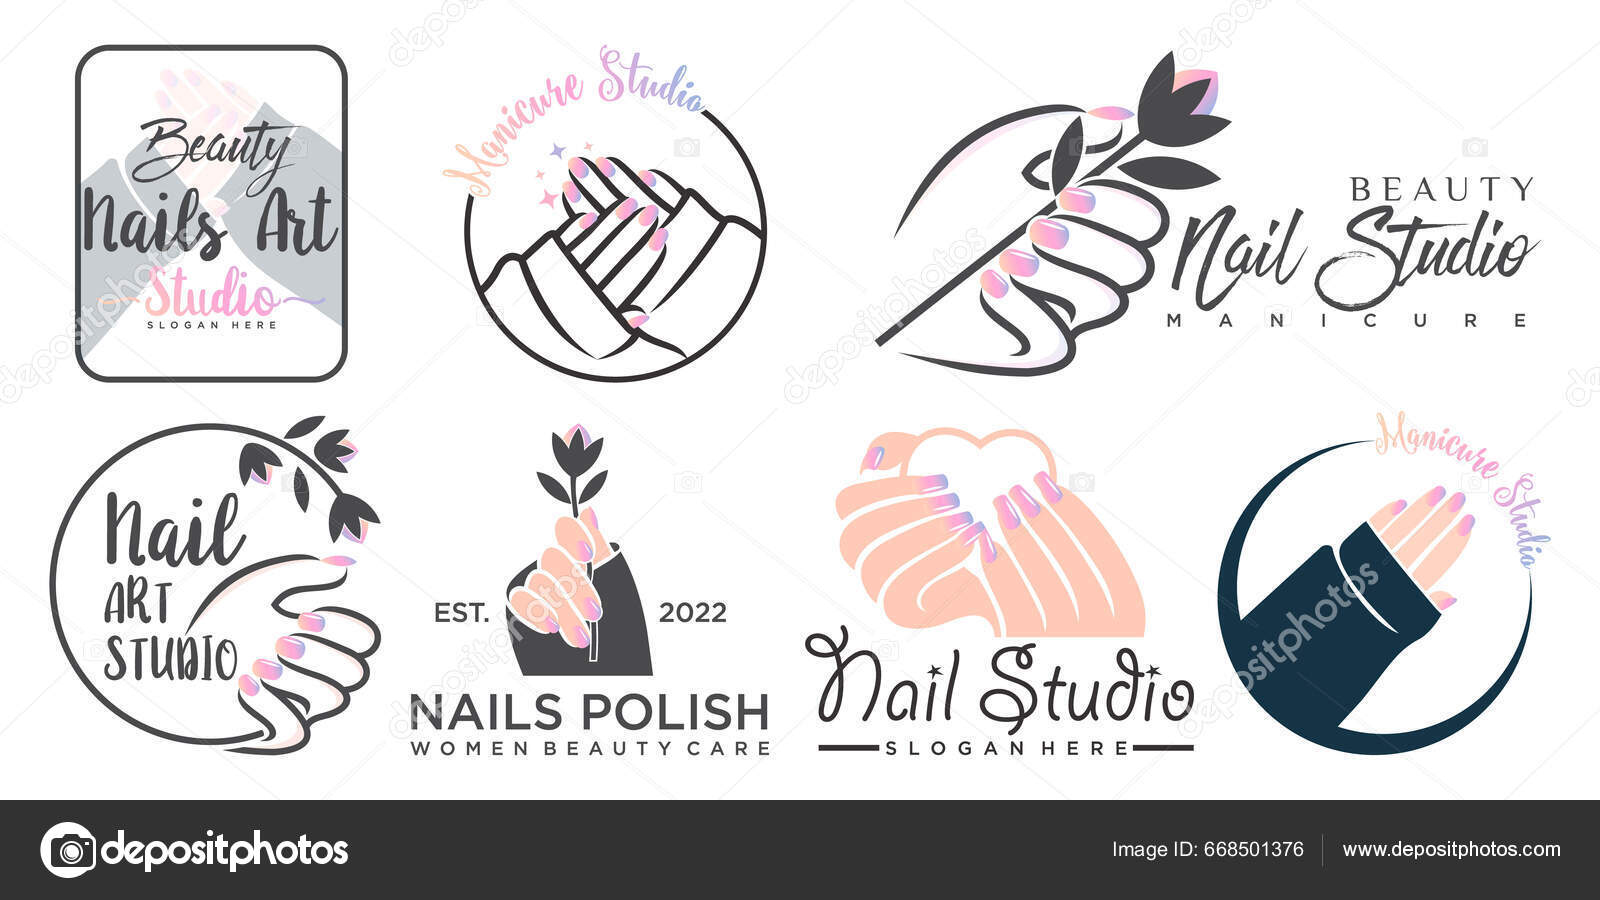 Nail Art logo, Vector Logo of Nail Art brand free download (eps, ai, png,  cdr) formats